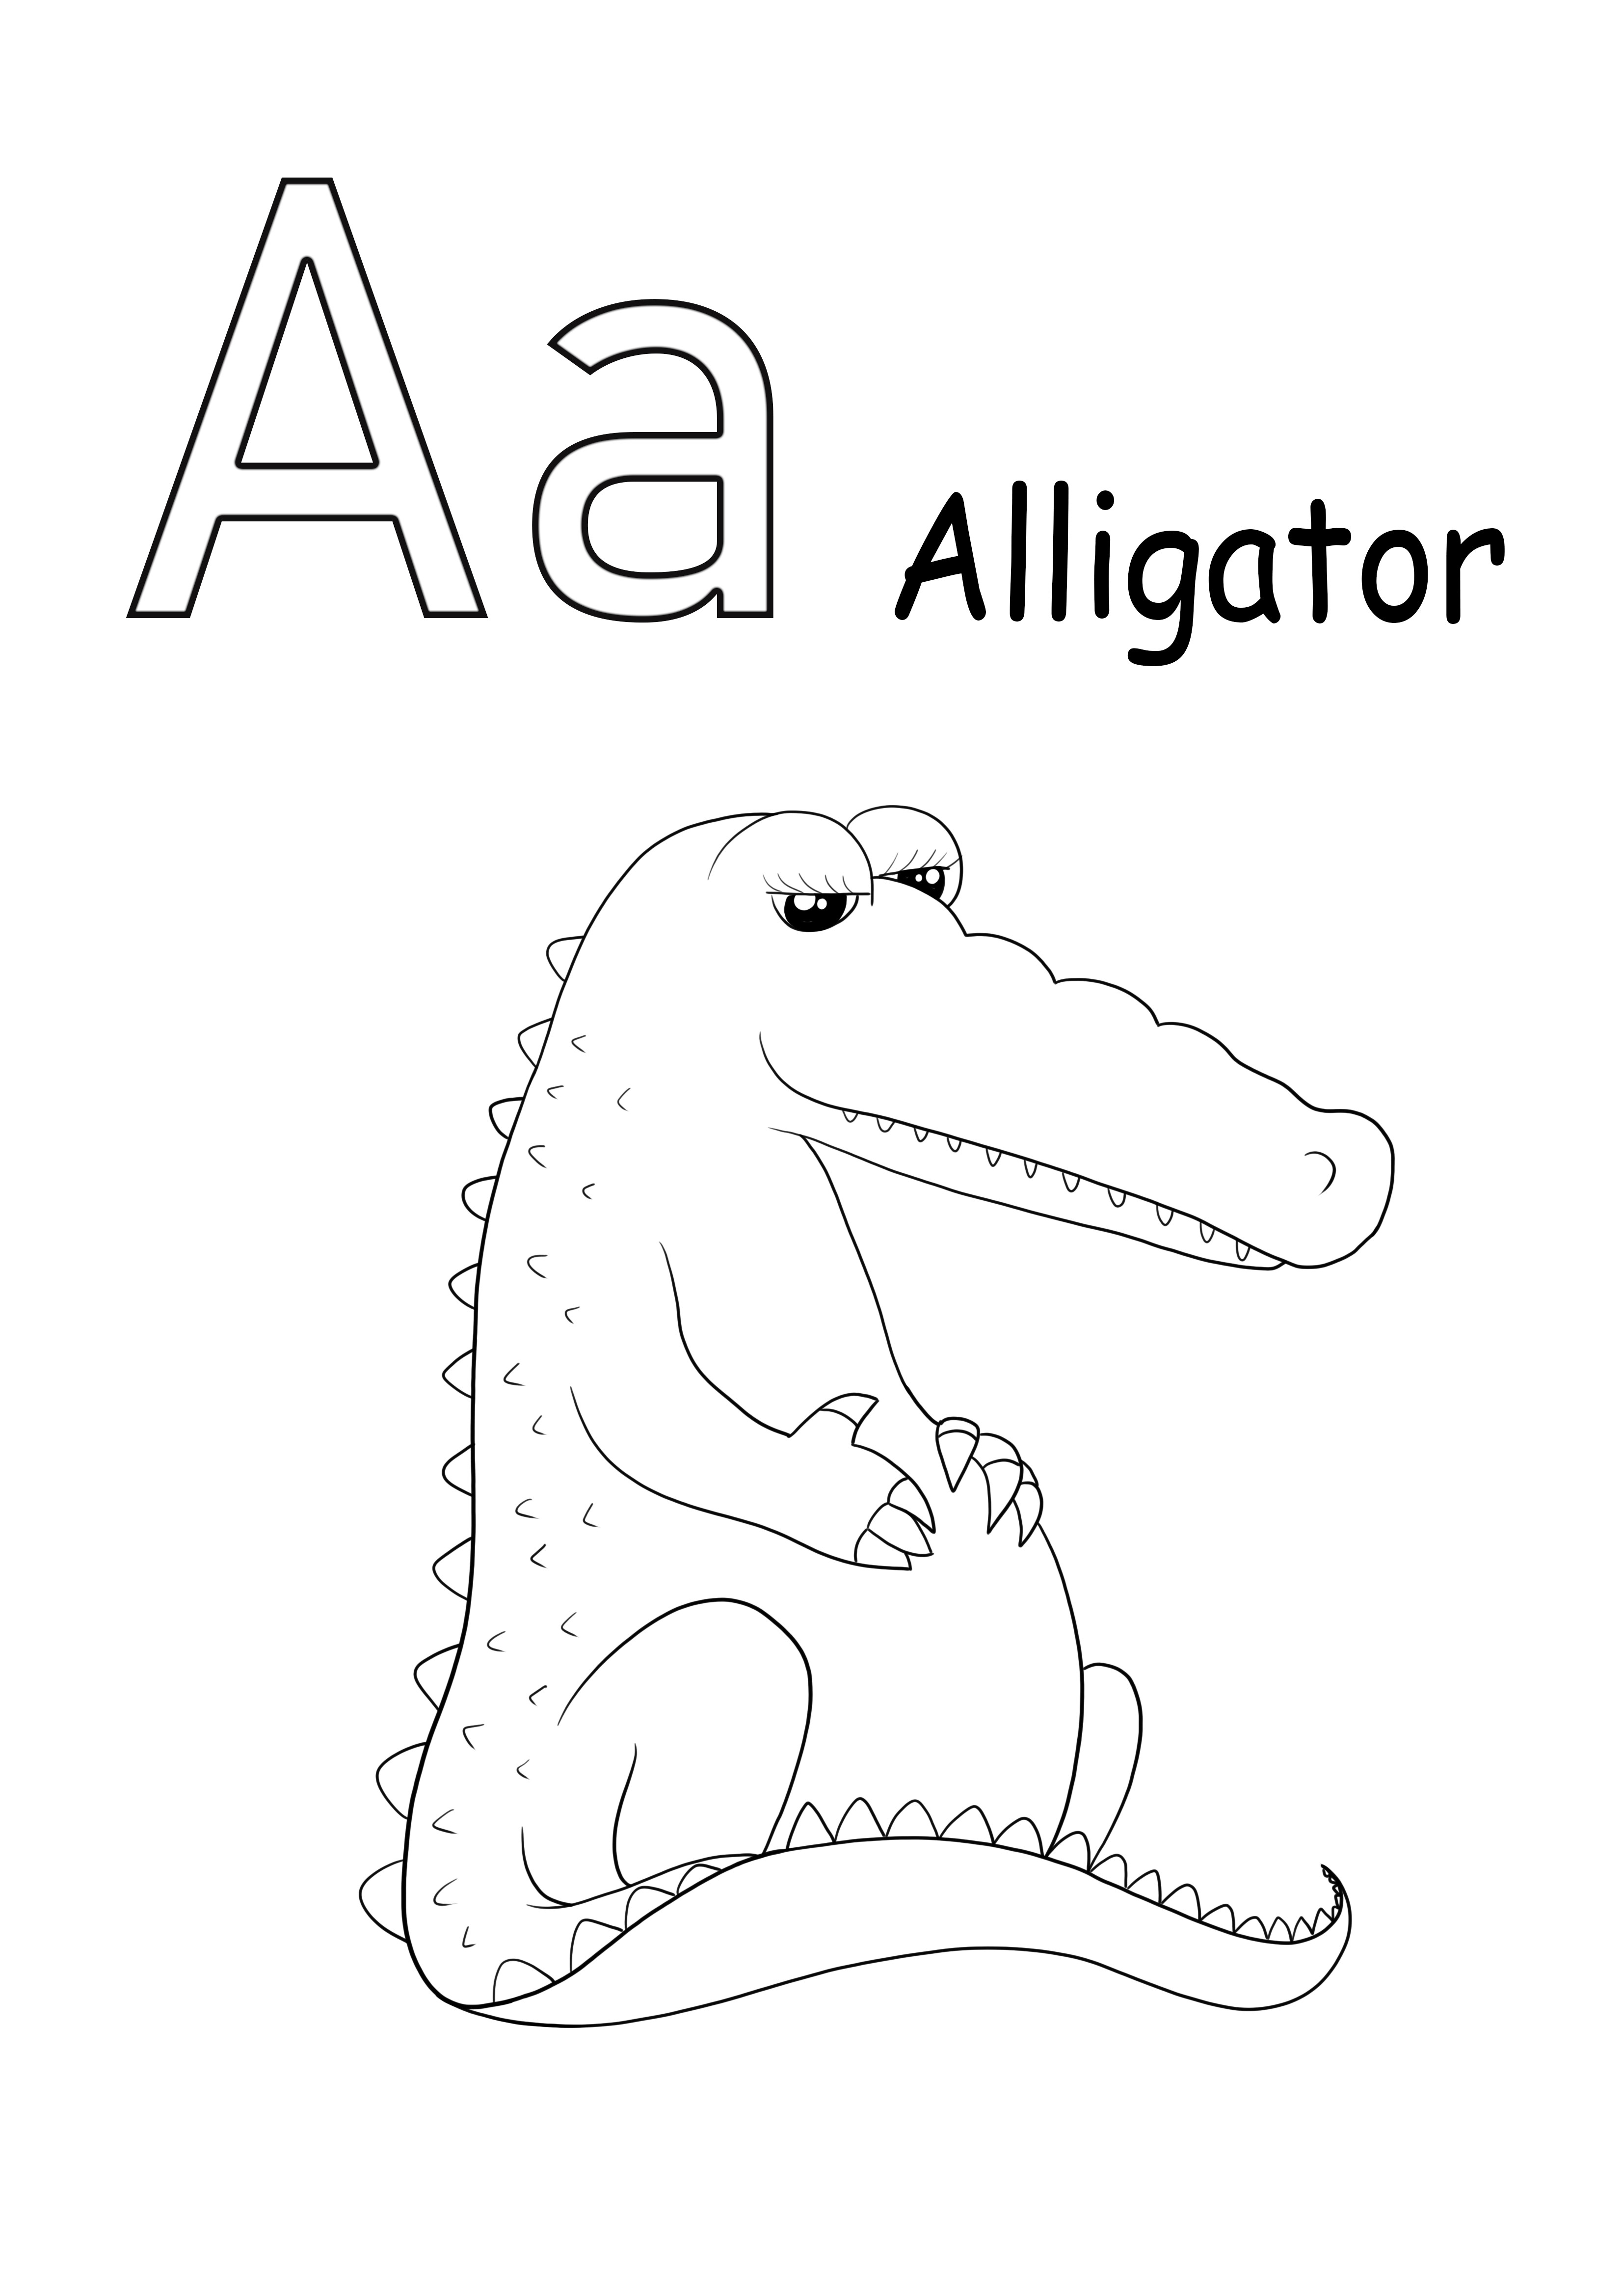 A az aligátorhoz készült, ingyenesen letölthető kép gyerekeknek kiszínezhető